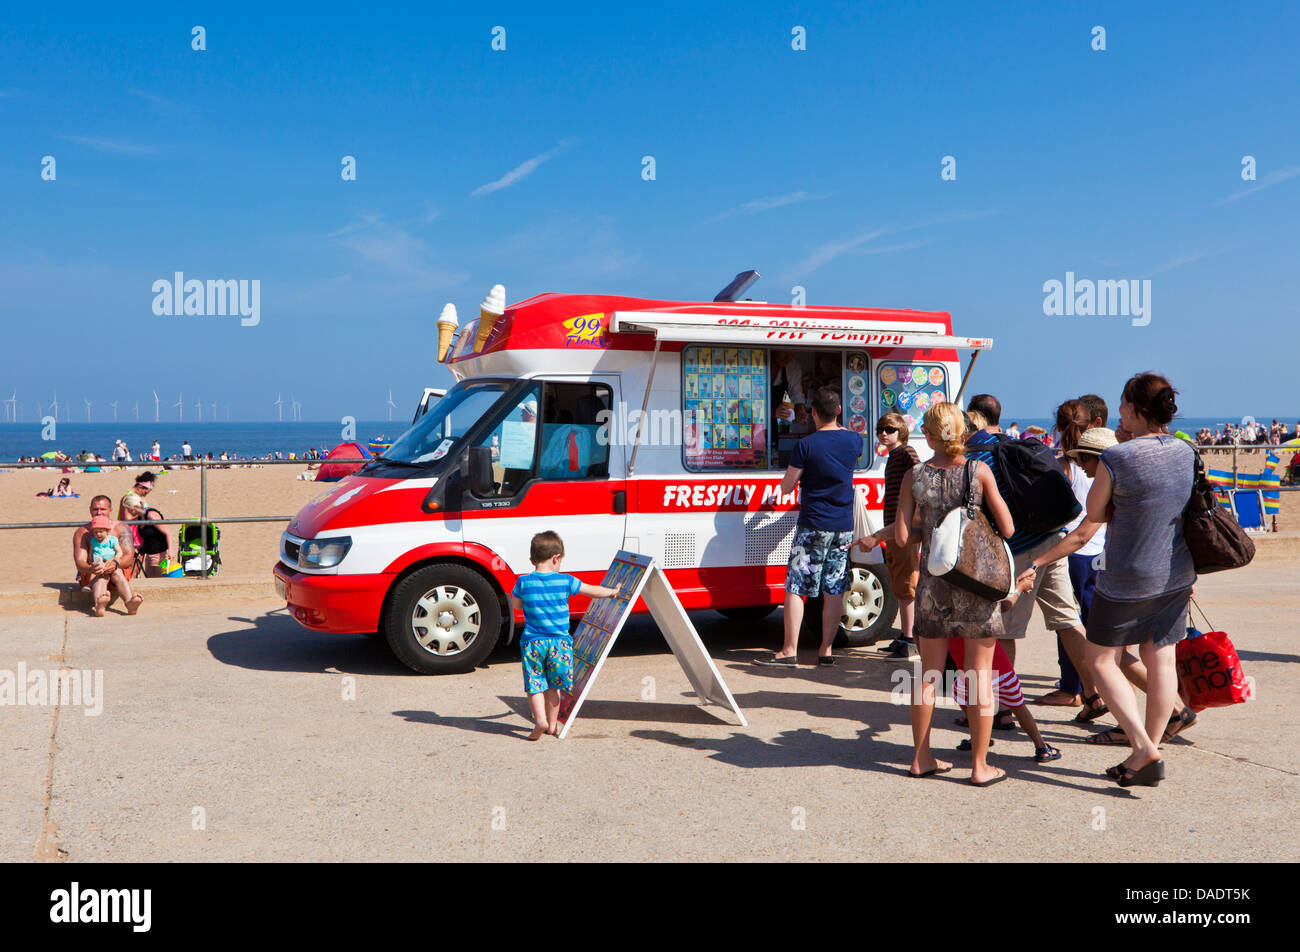 Les gens font la queue pour une glace à partir d'un ice cream van stationné sur la promenade de la plage de Skegness Lincolnshire England UK GB EU Europe Banque D'Images